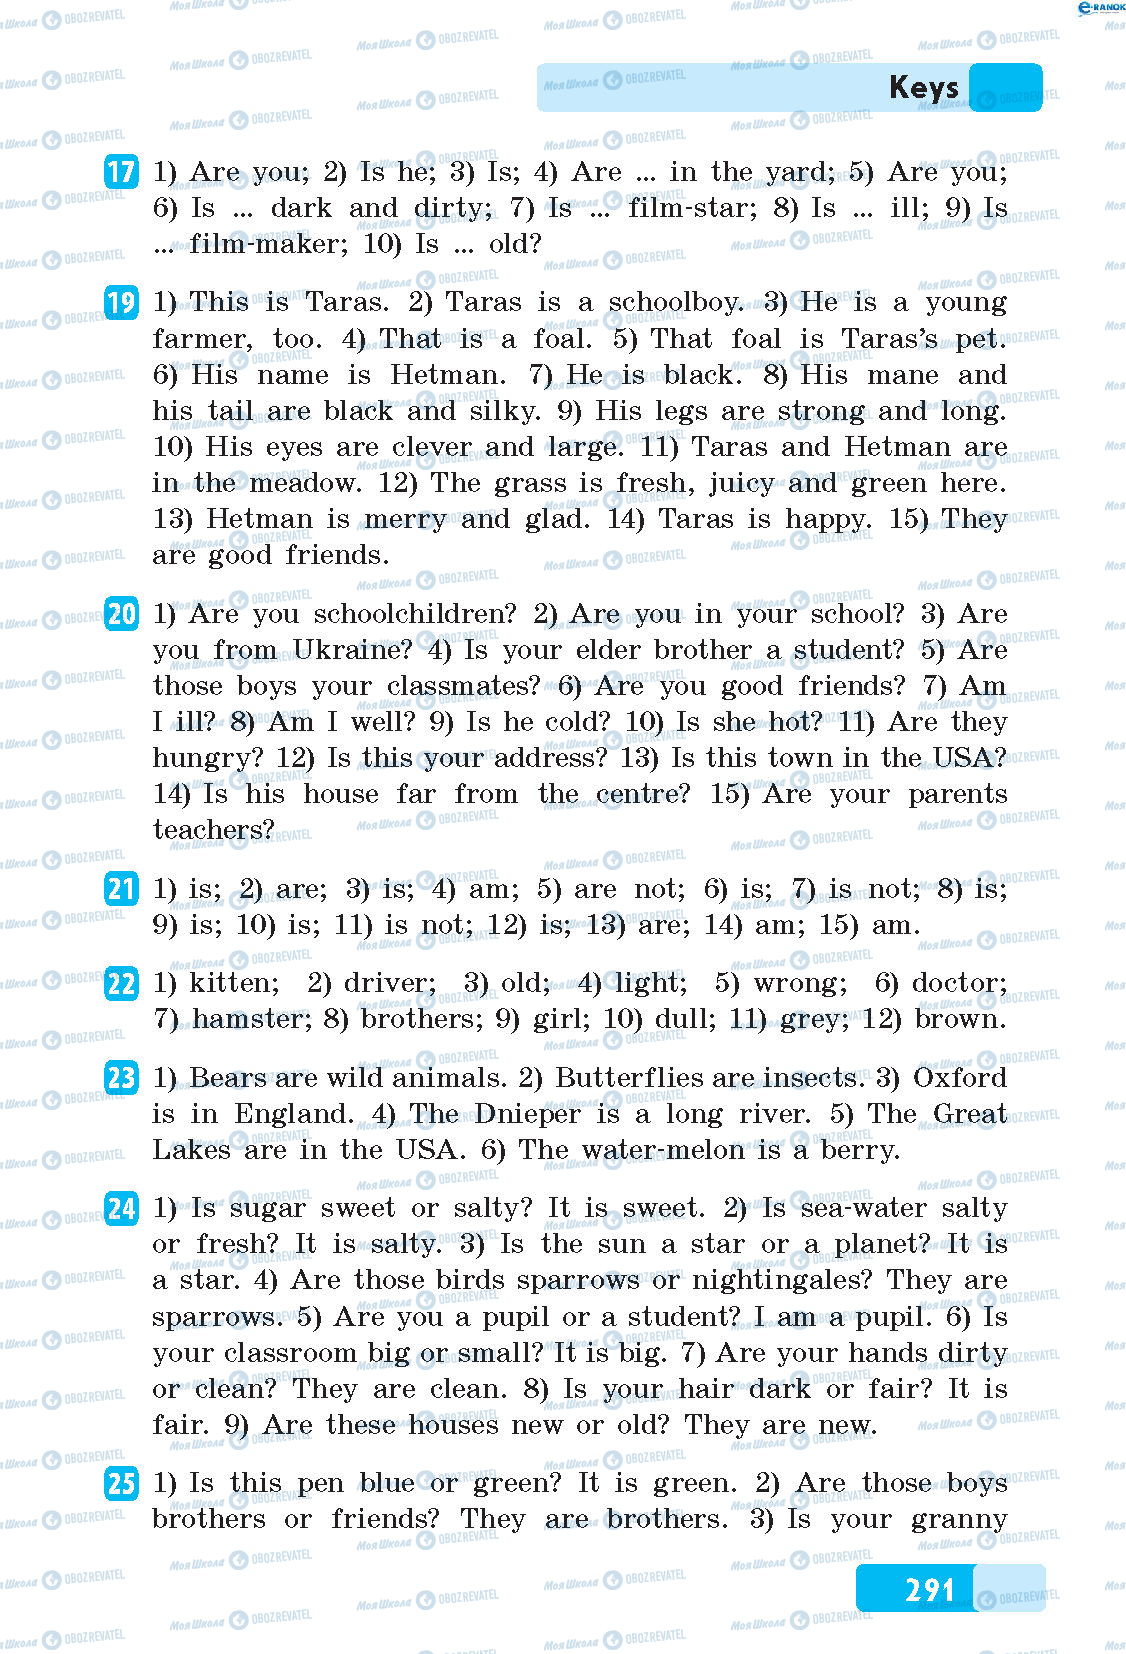 ГДЗ Английский язык 5 класс страница 17-25